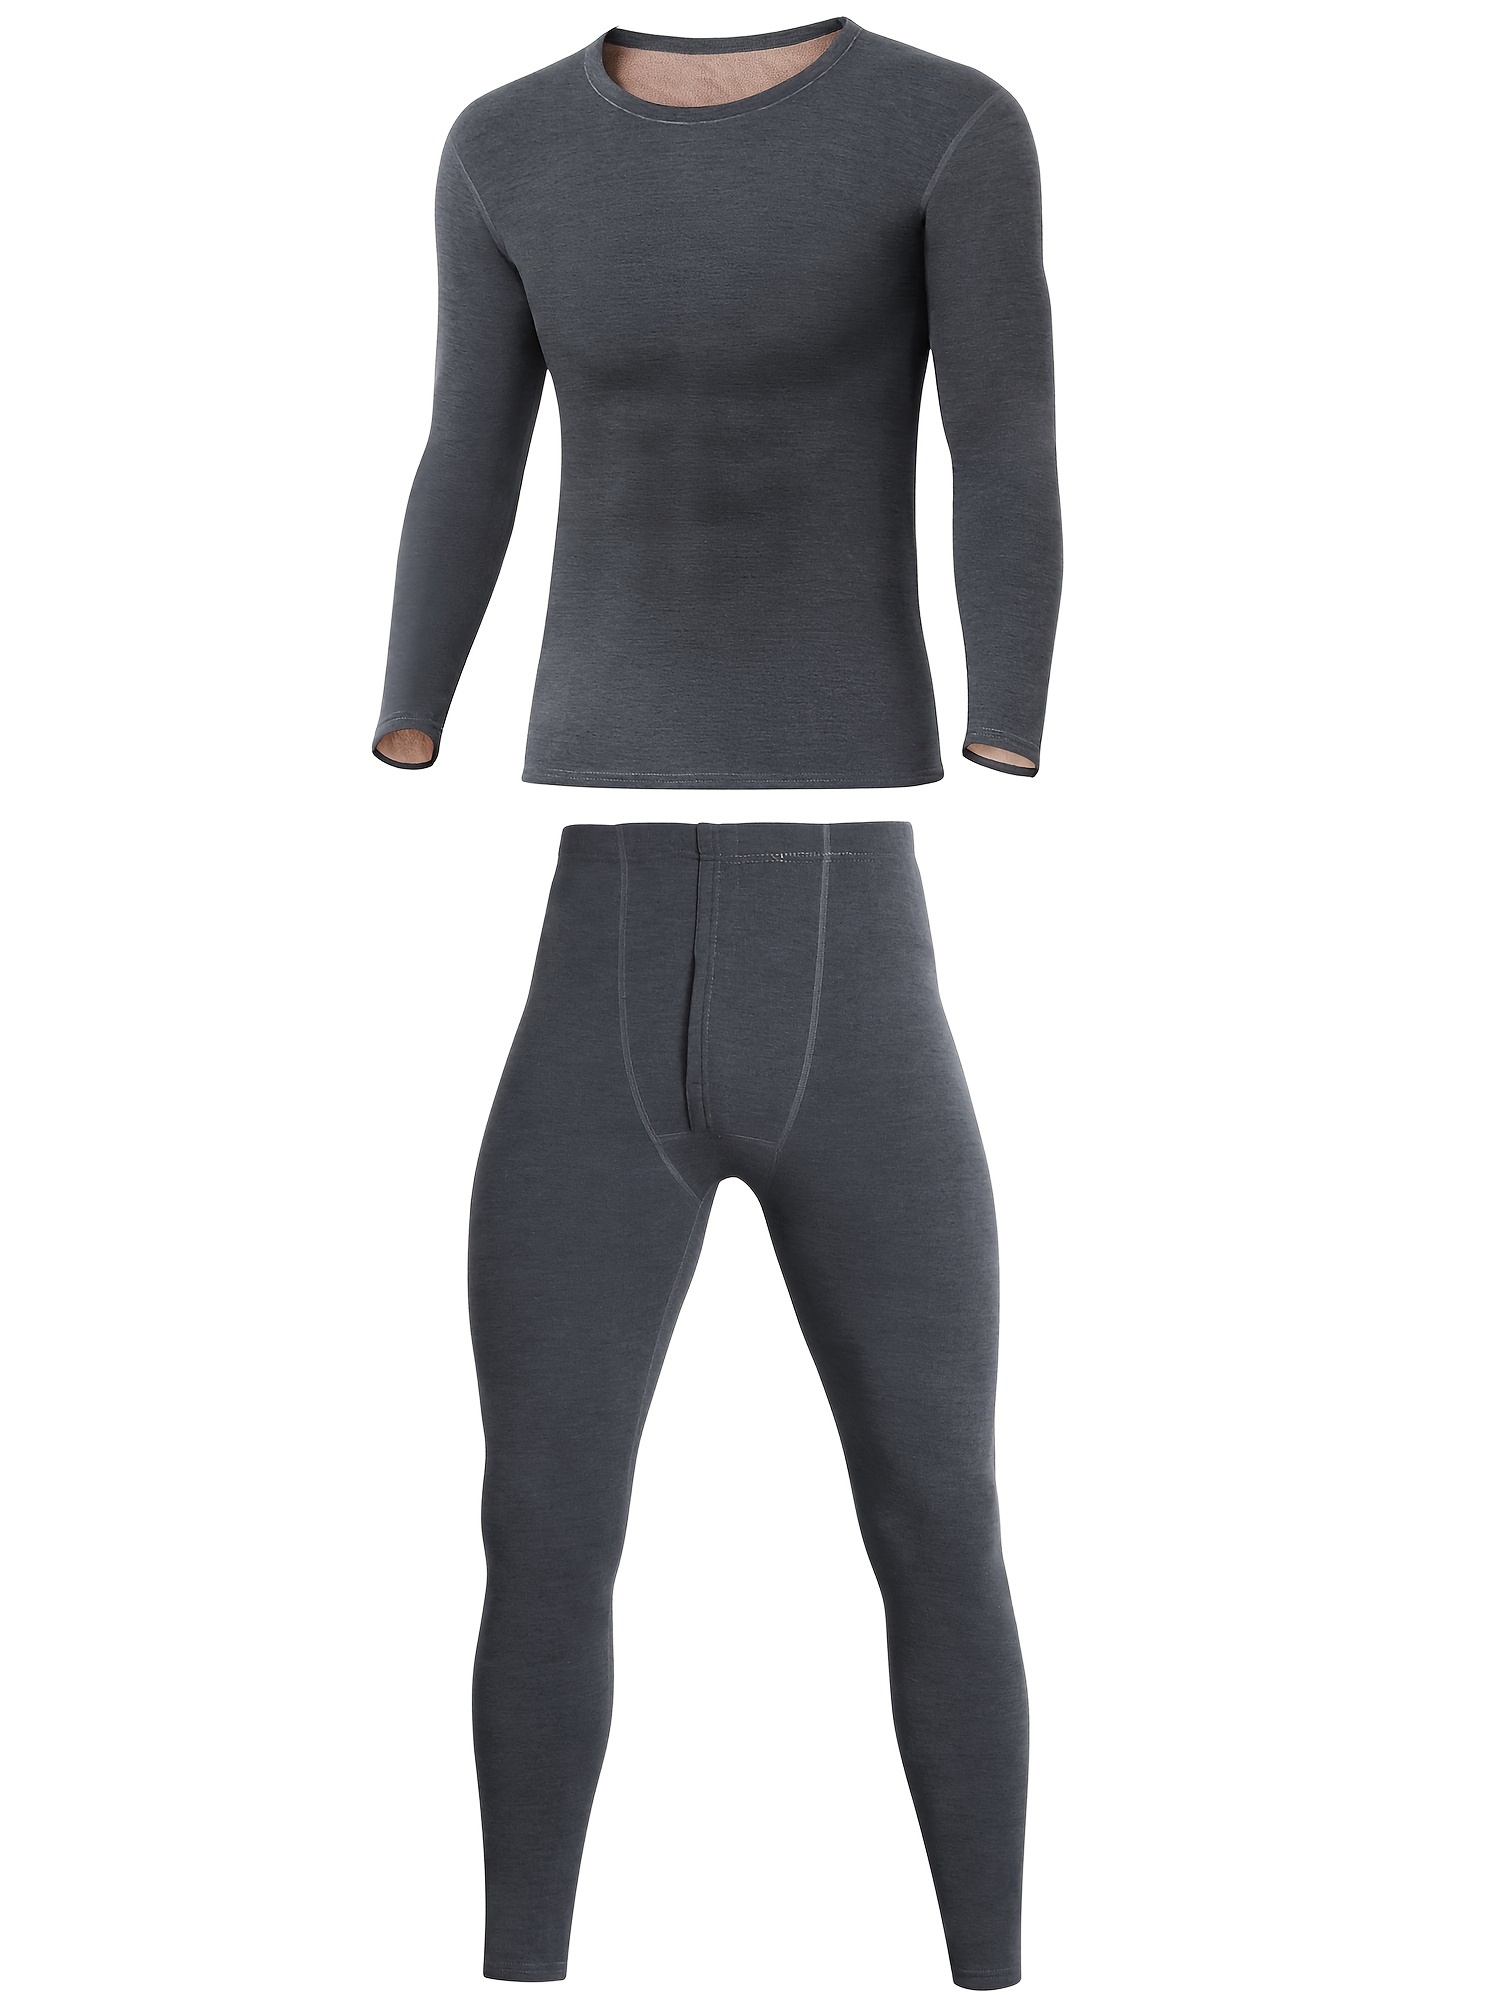 Stay Warm & Stylish: Men's Velvet Underwear Set For Winter Outdoor  Activities